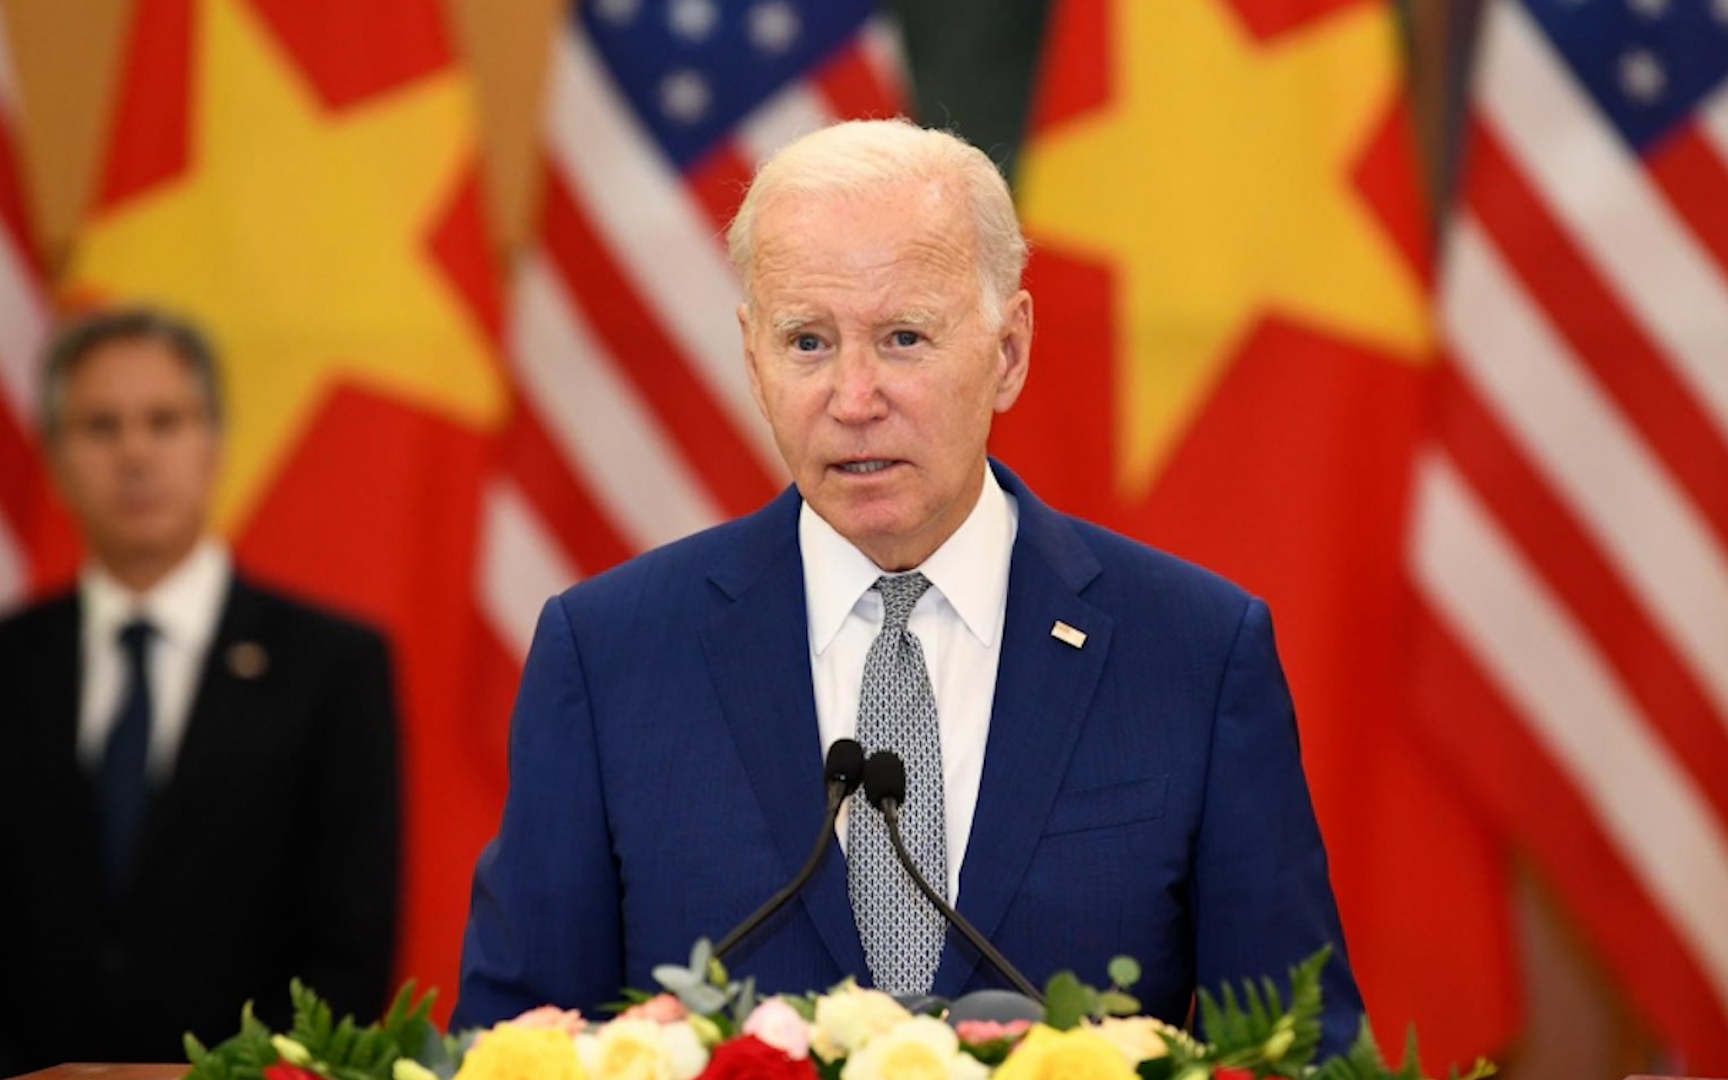 Tổng thống Joe Biden: Những gì đạt được 50 năm qua đòi hỏi nỗ lực của các nhà lãnh đạo hai nước trong nhiều năm